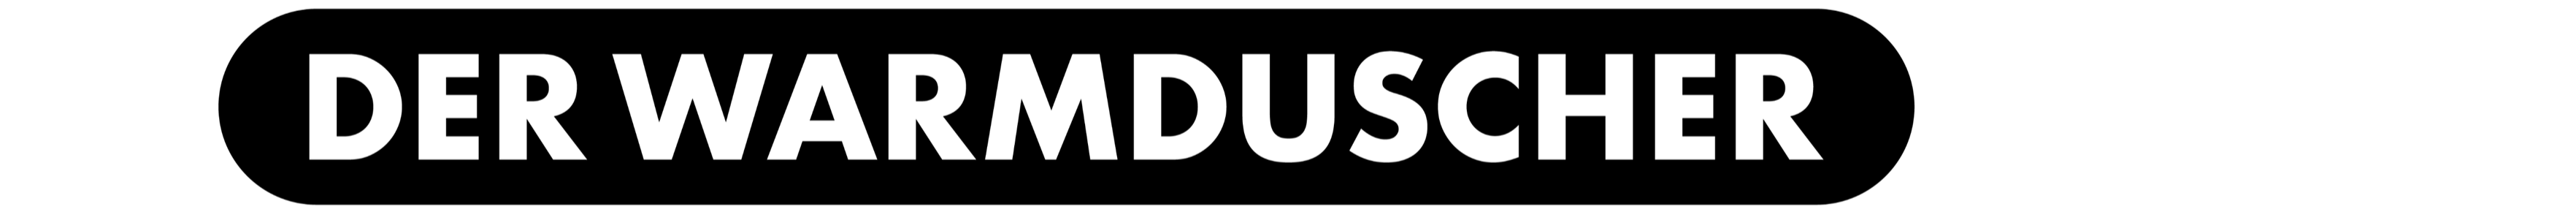 warmduscher-gmbh-logo-transparent